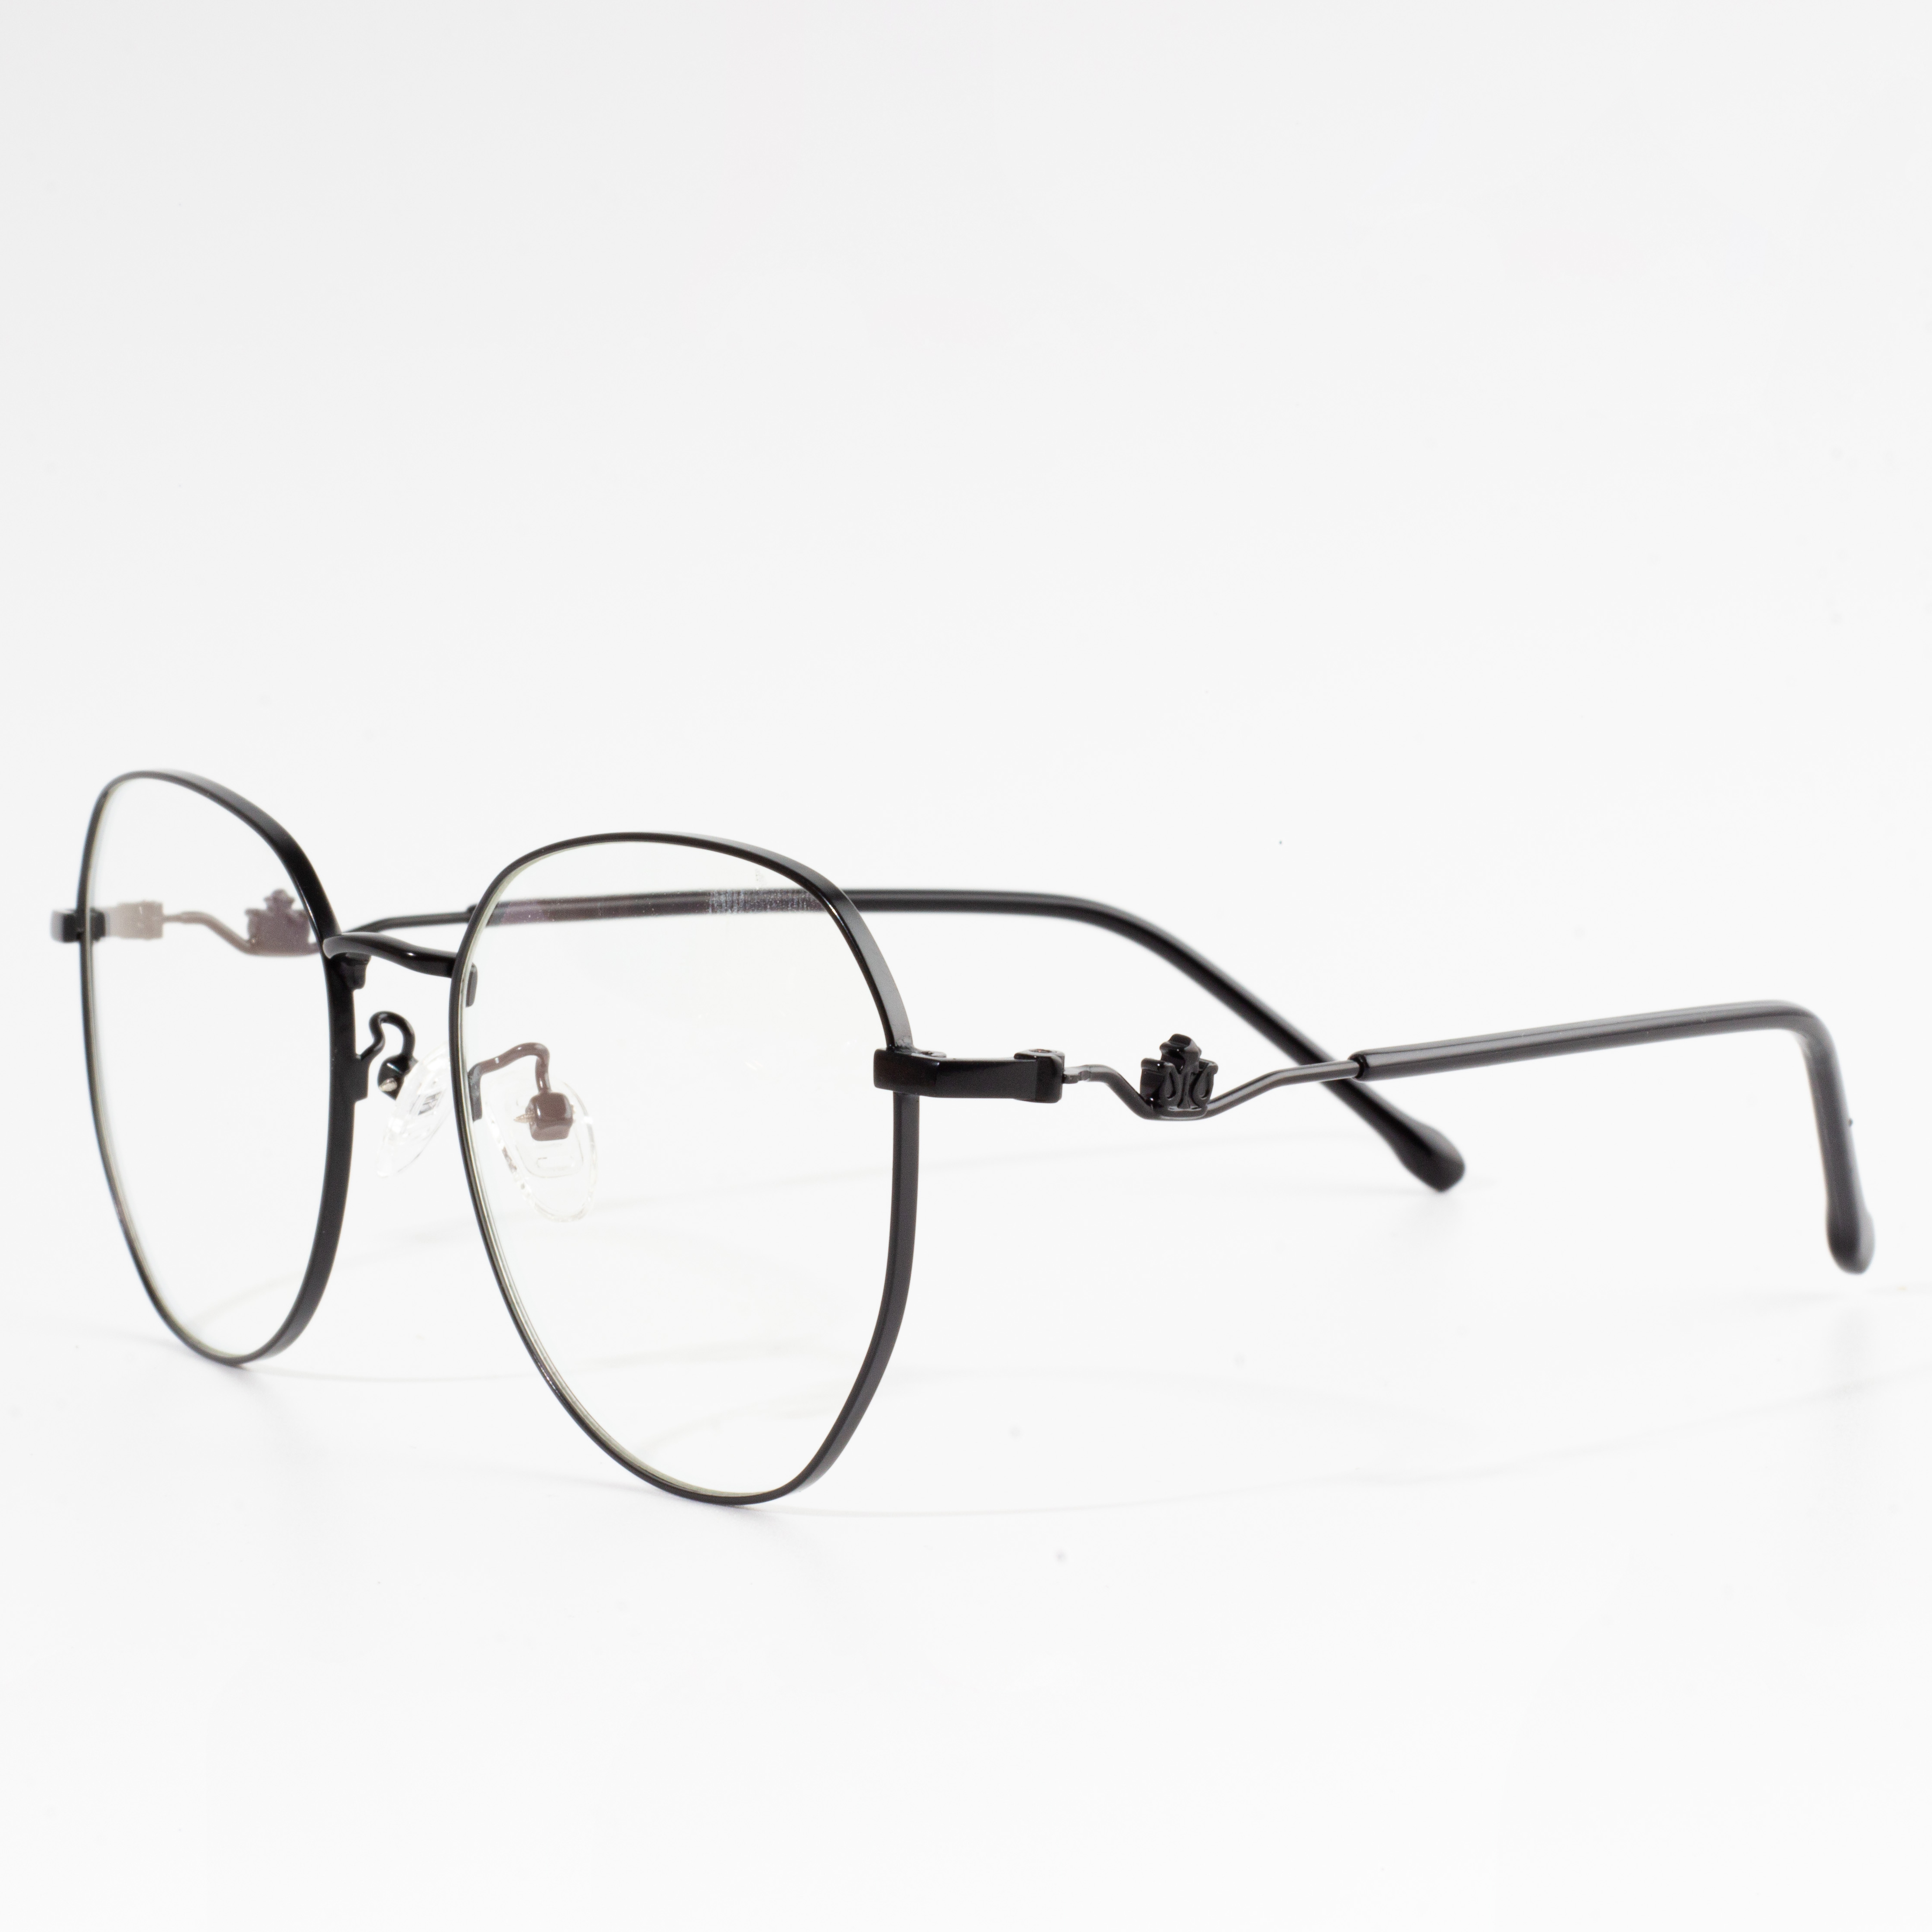 γυαλιά οράσεως με στρογγυλό πλαίσιο